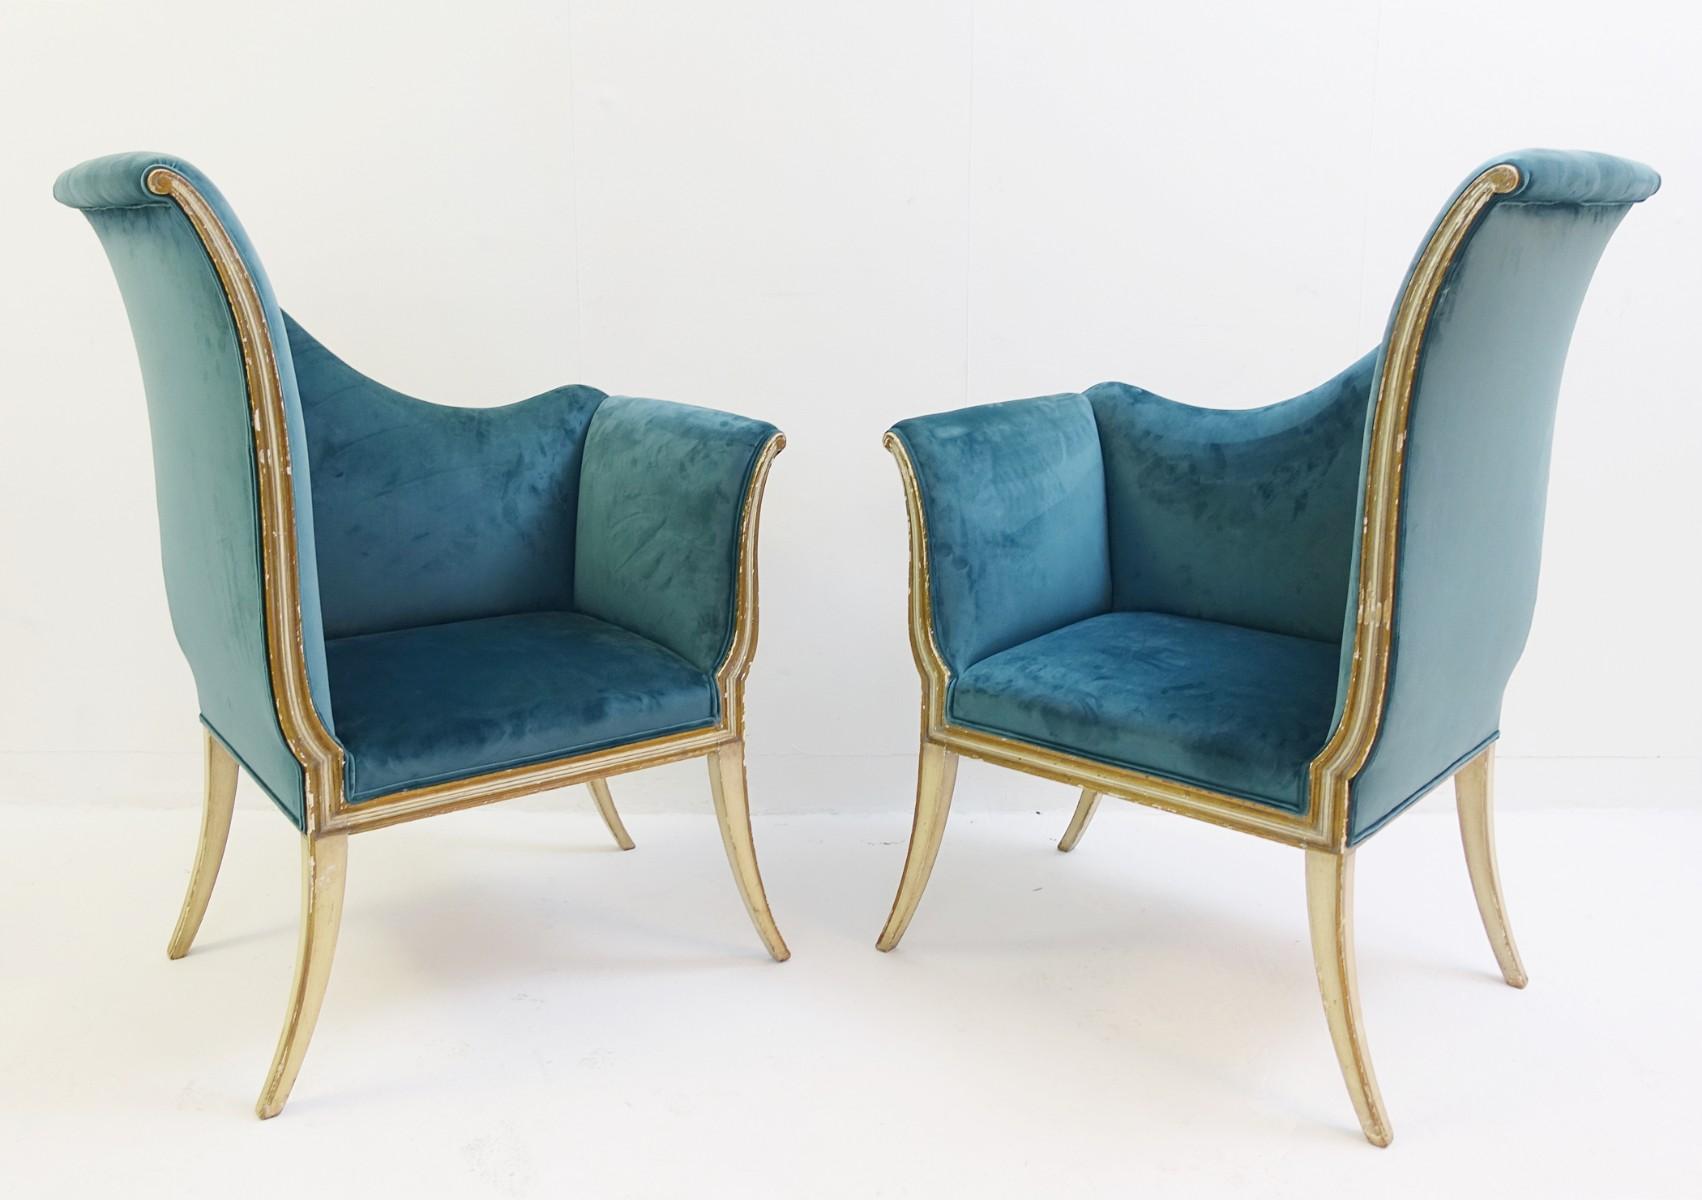 Pair of corner chairs - new velvet upholstery.